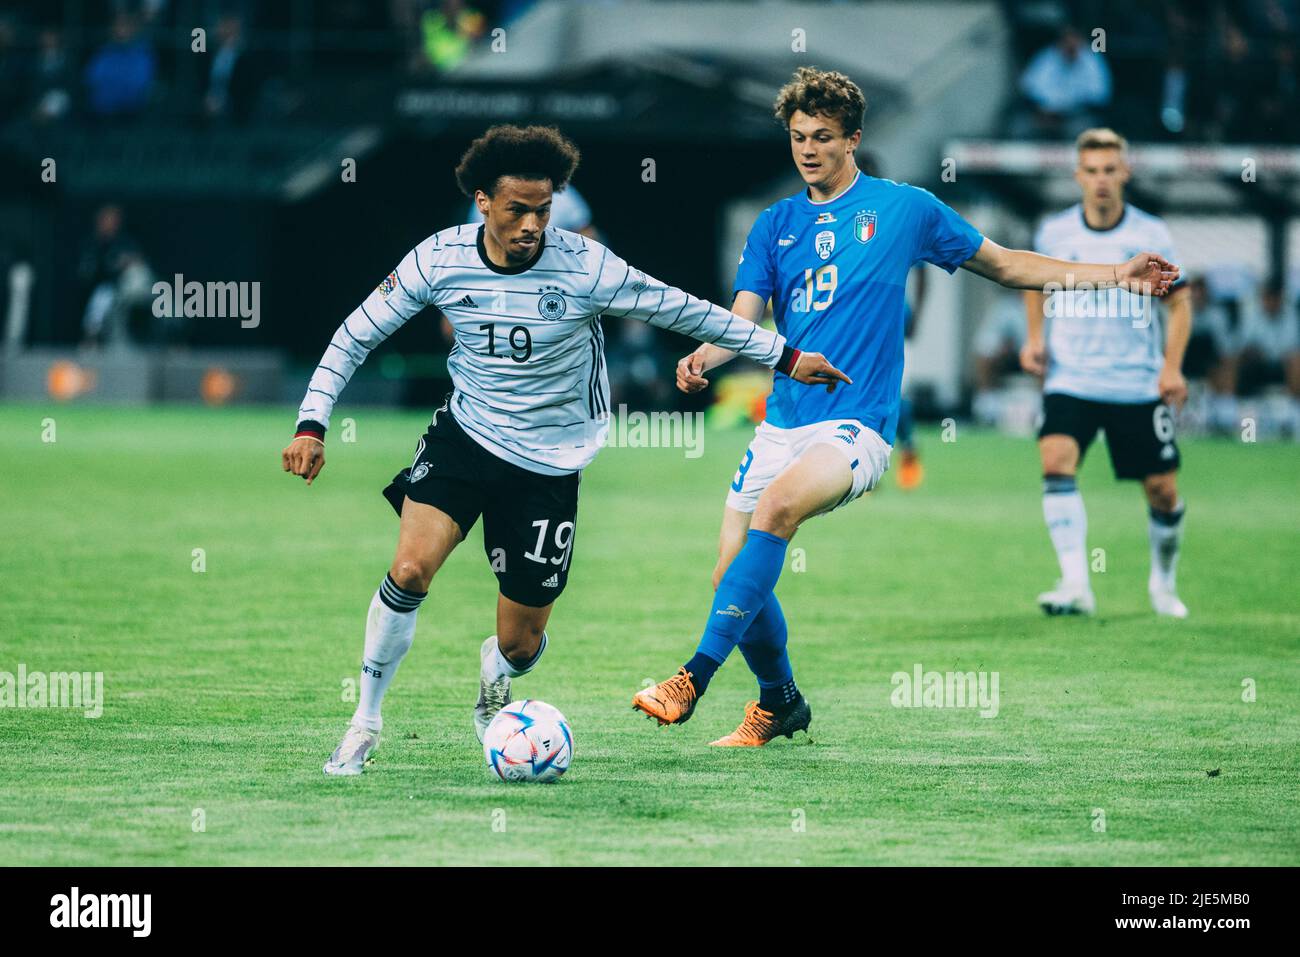 Mönchengladbach, Borussia-Park, 14.06.22: Leroy Sane (Germany) (L) gegen Giorgio Scalvini (Italy) beim Länderspiel zwischen Deutschland vs. Italien. Stock Photo